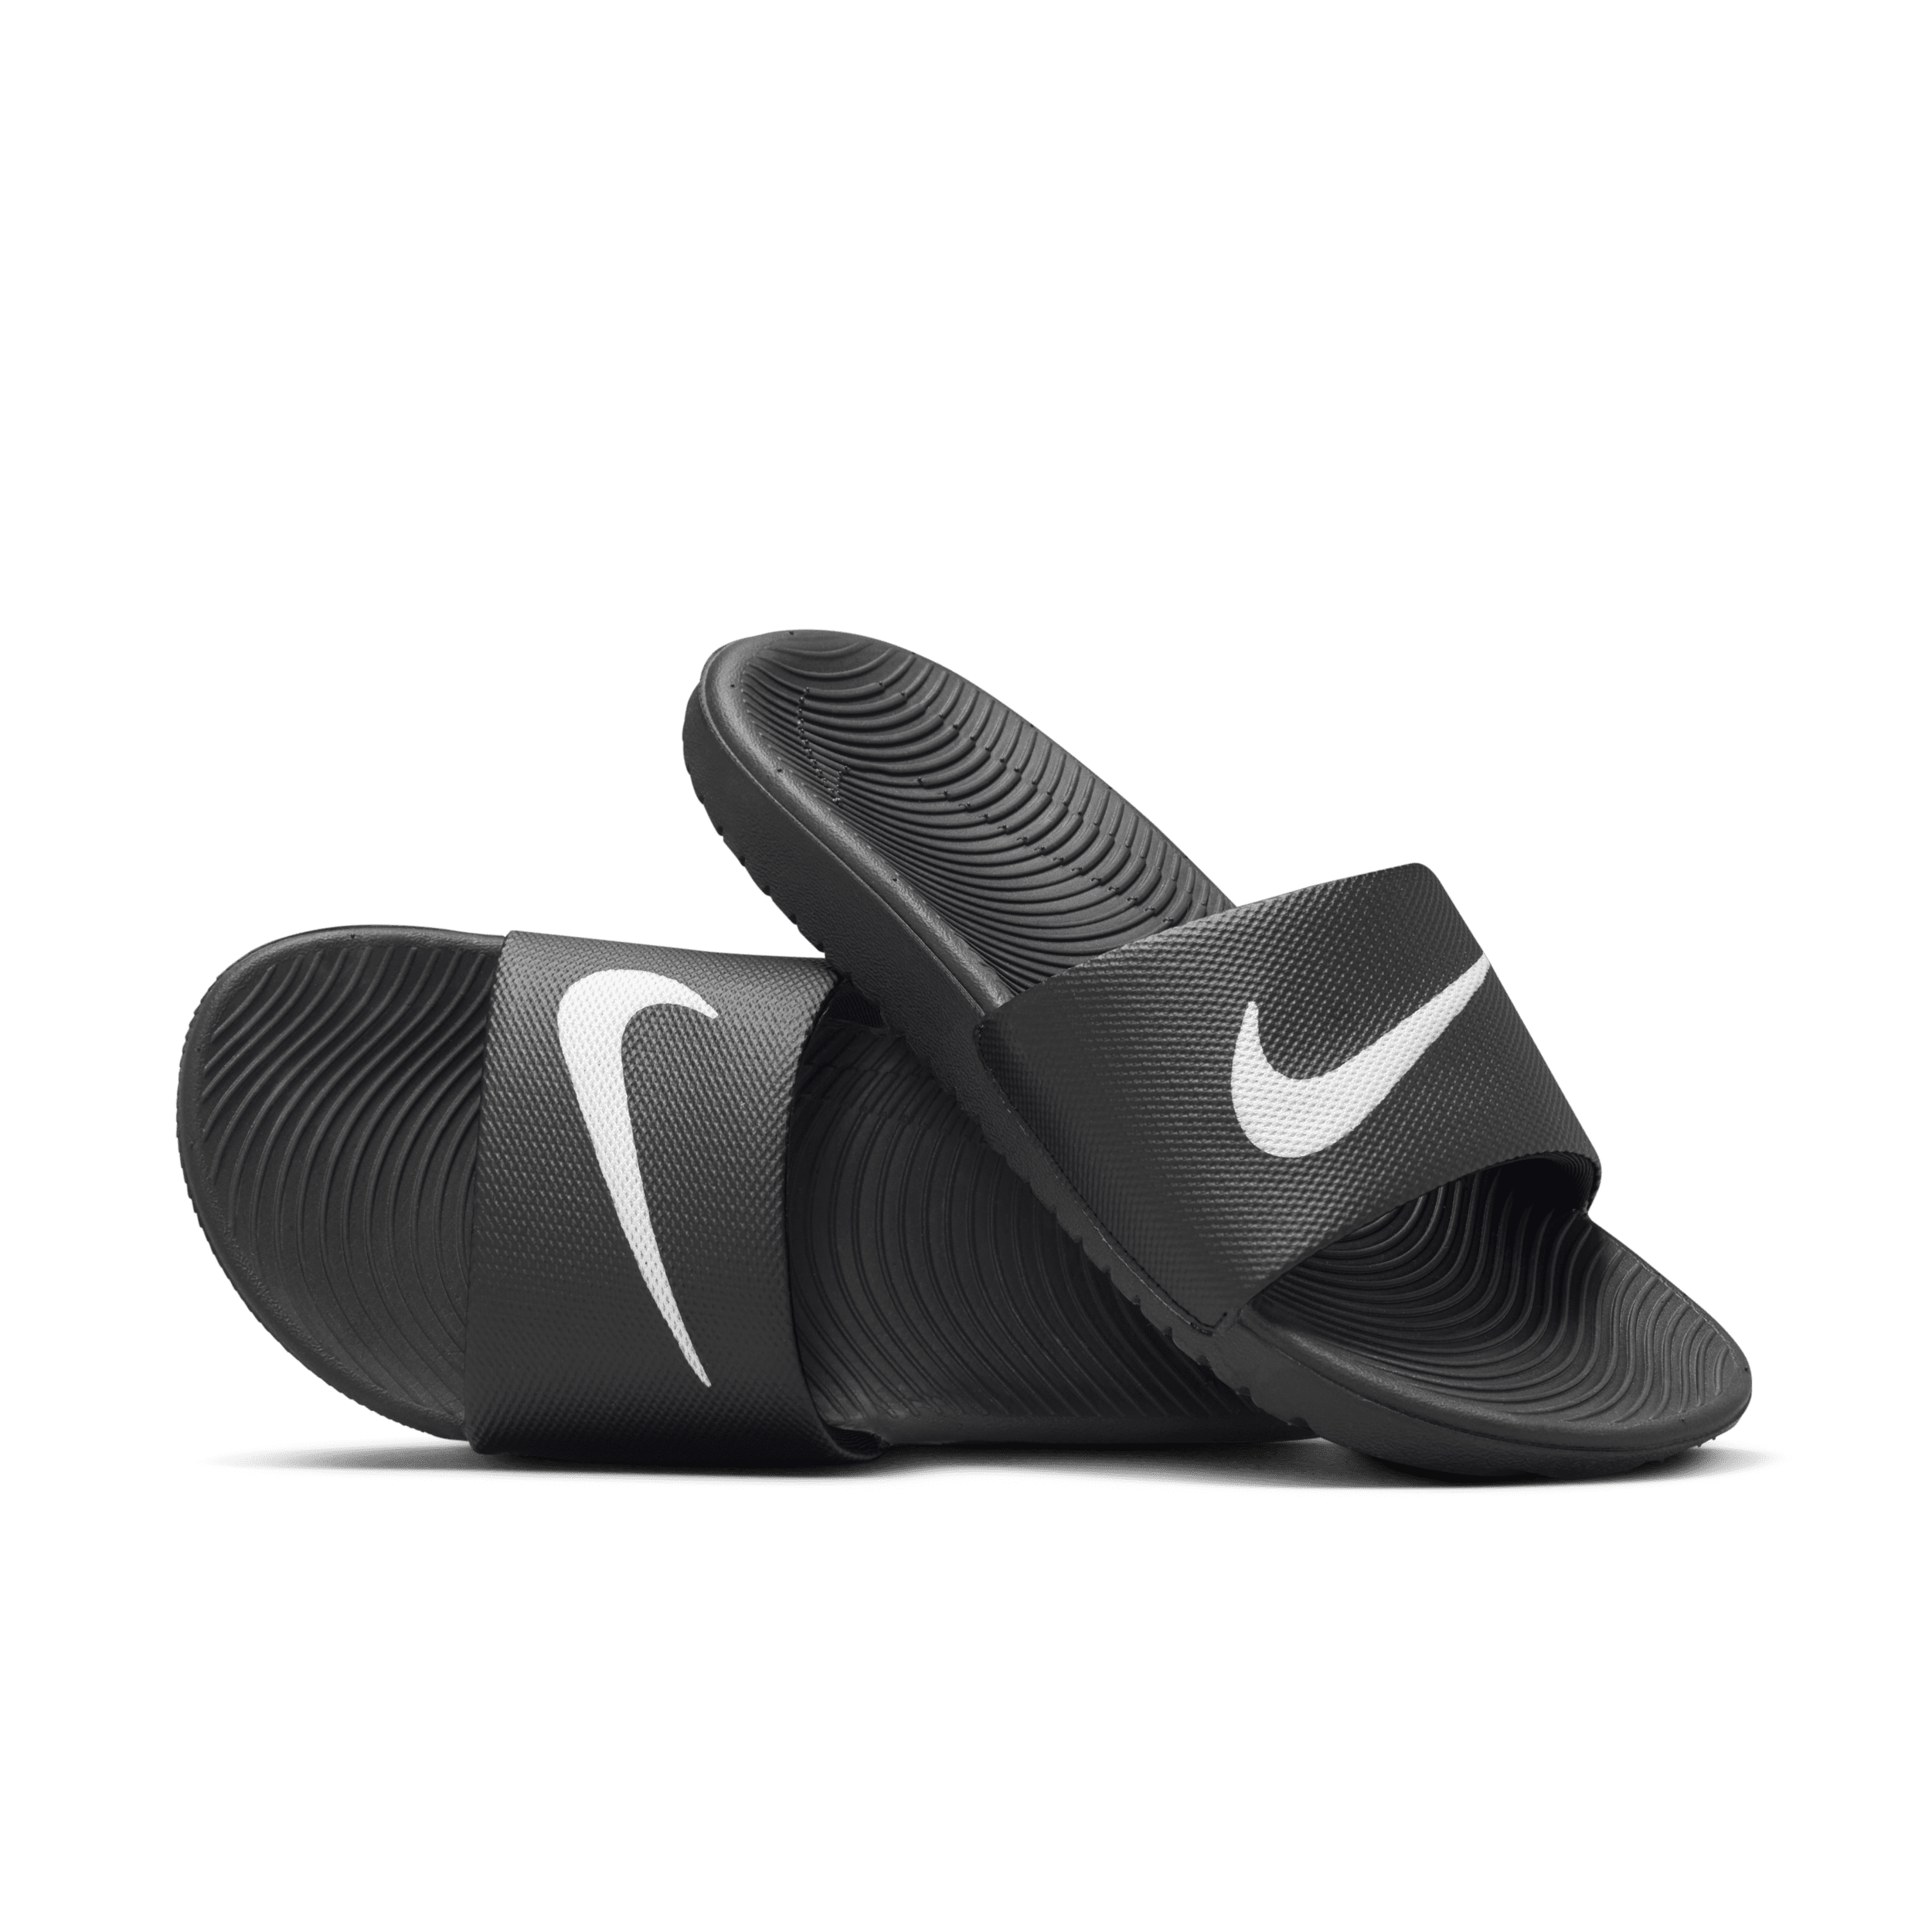 Nike Kawa Slippers voor kleuters/kids - Zwart